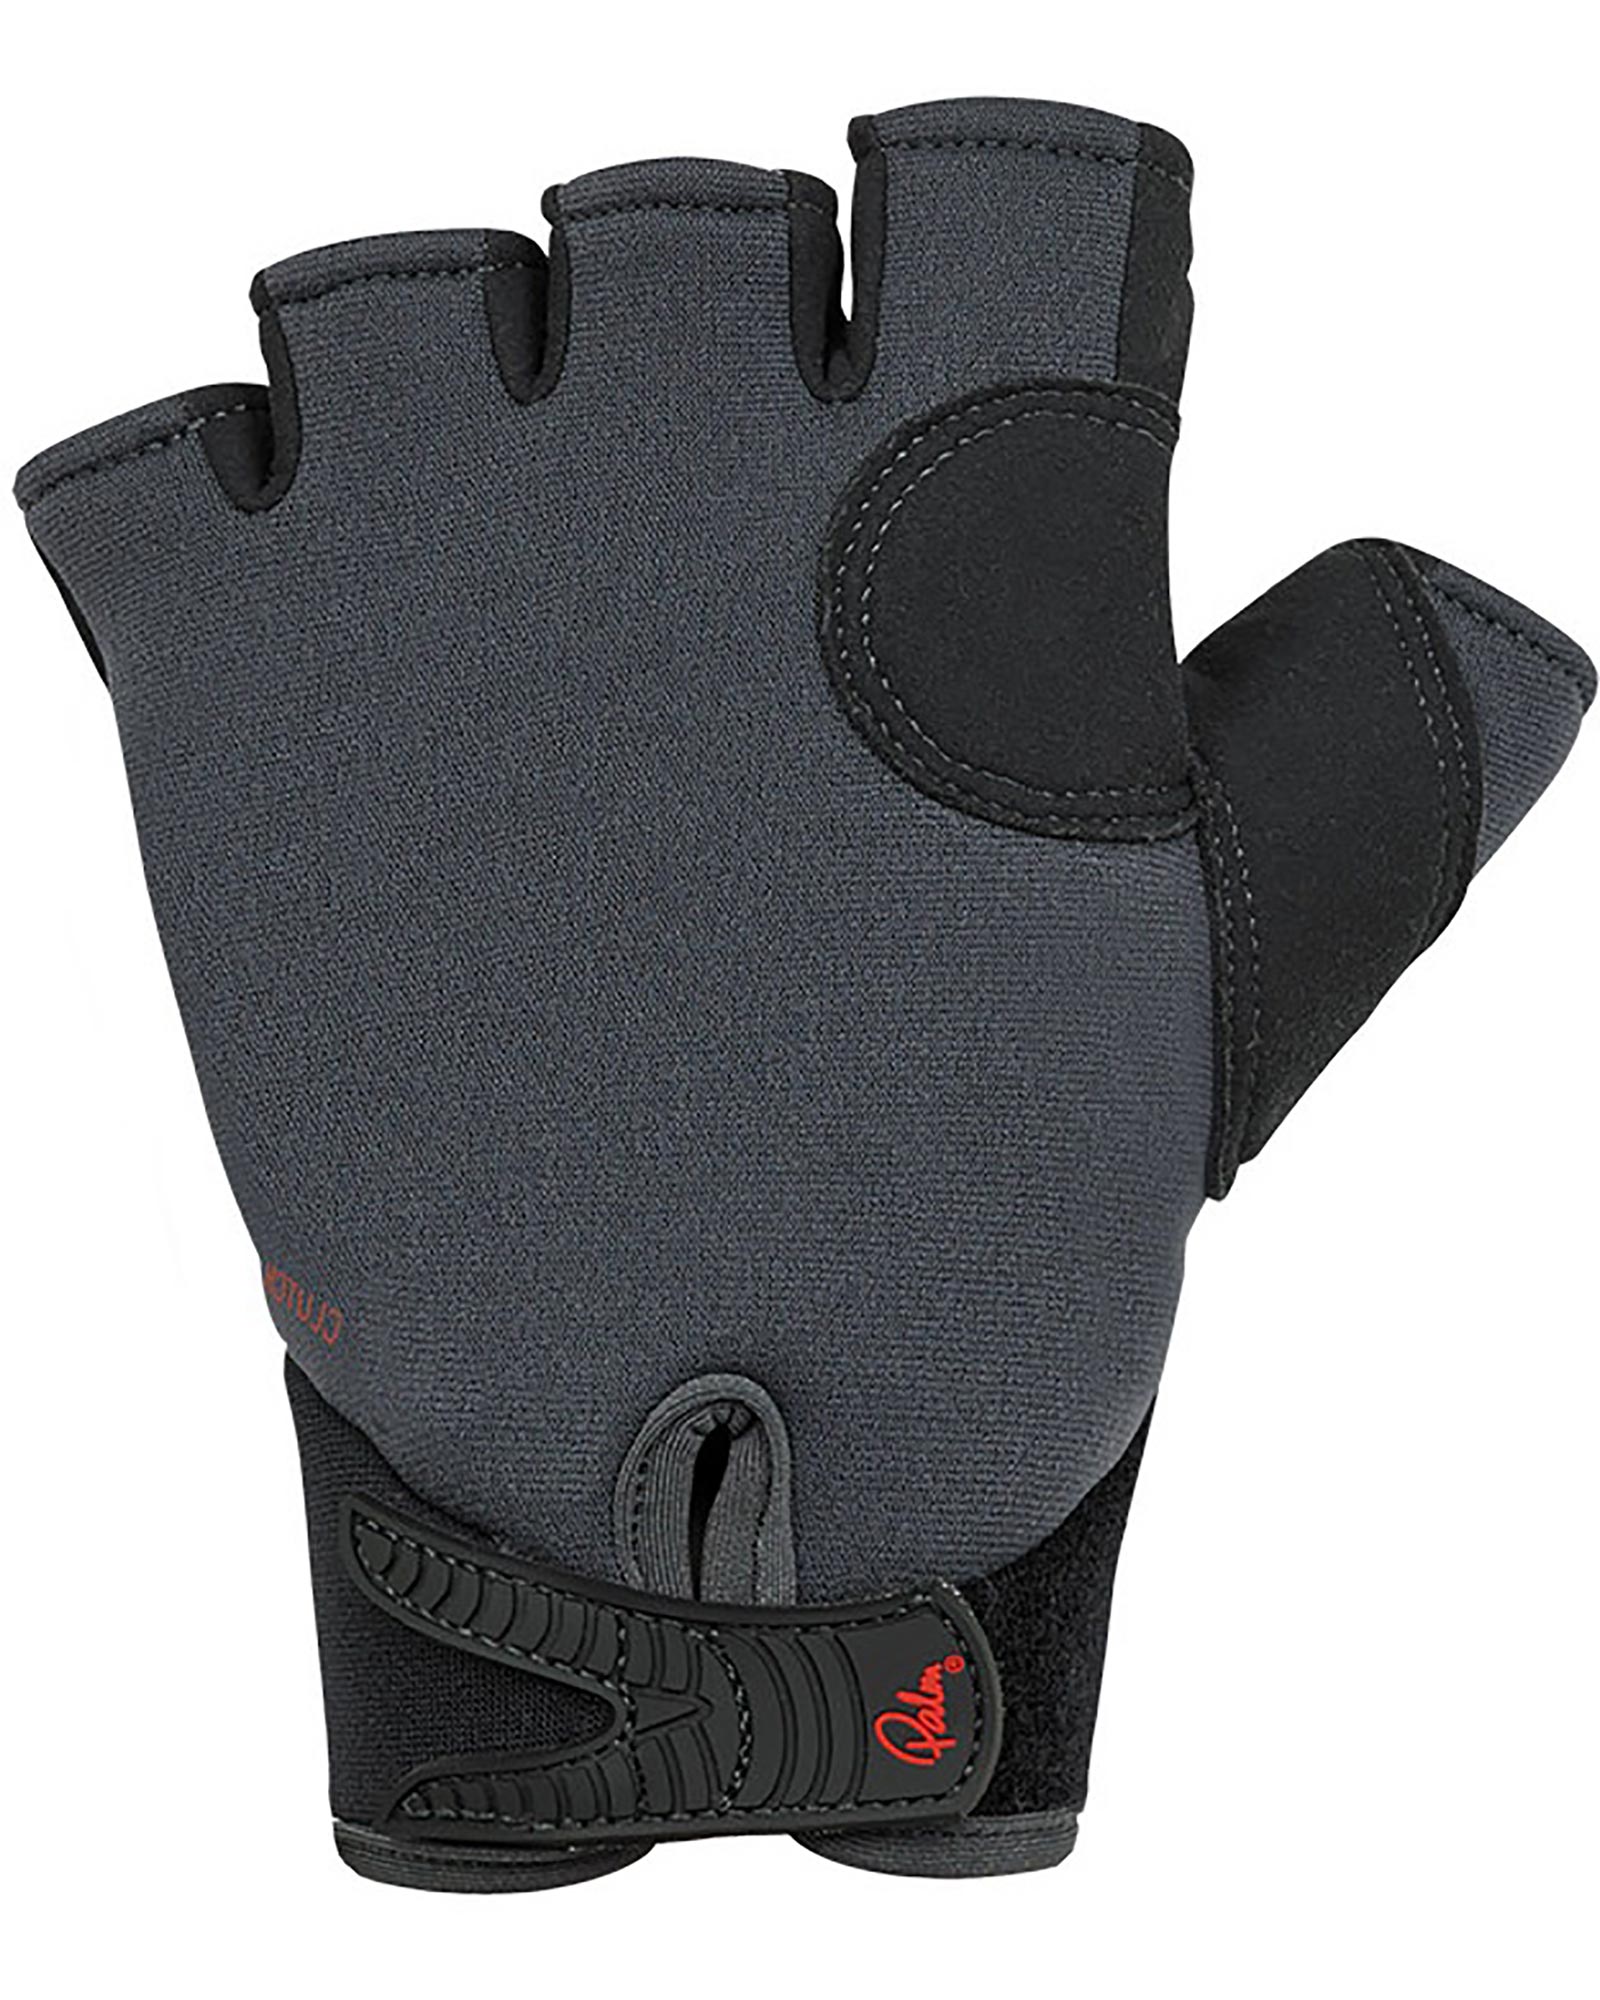 Palm Clutch Gloves